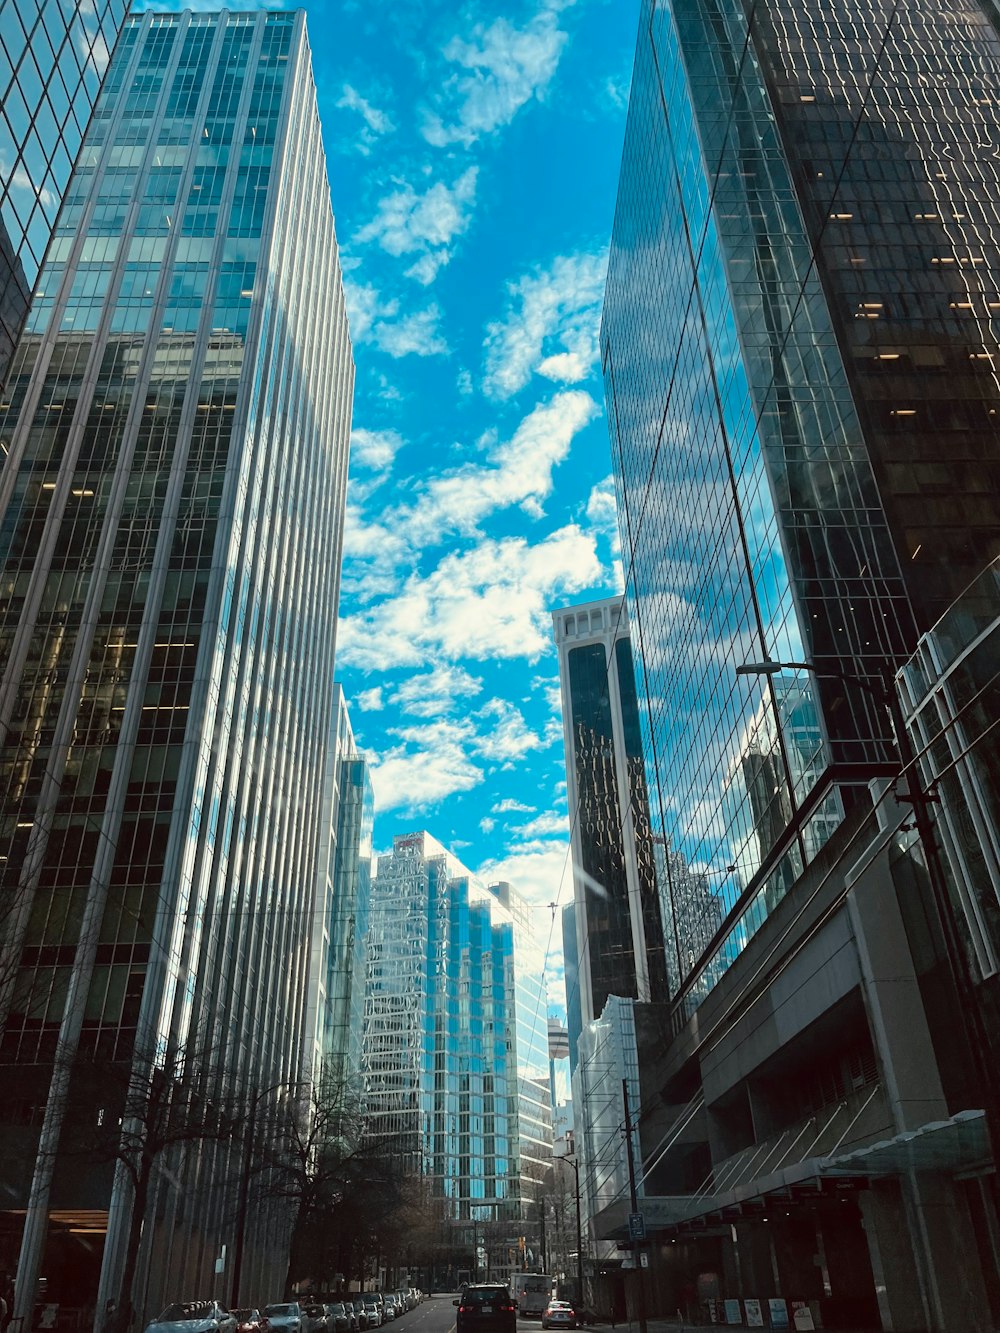 Une rue de la ville bordée de grands immeubles sous un ciel bleu nuageux